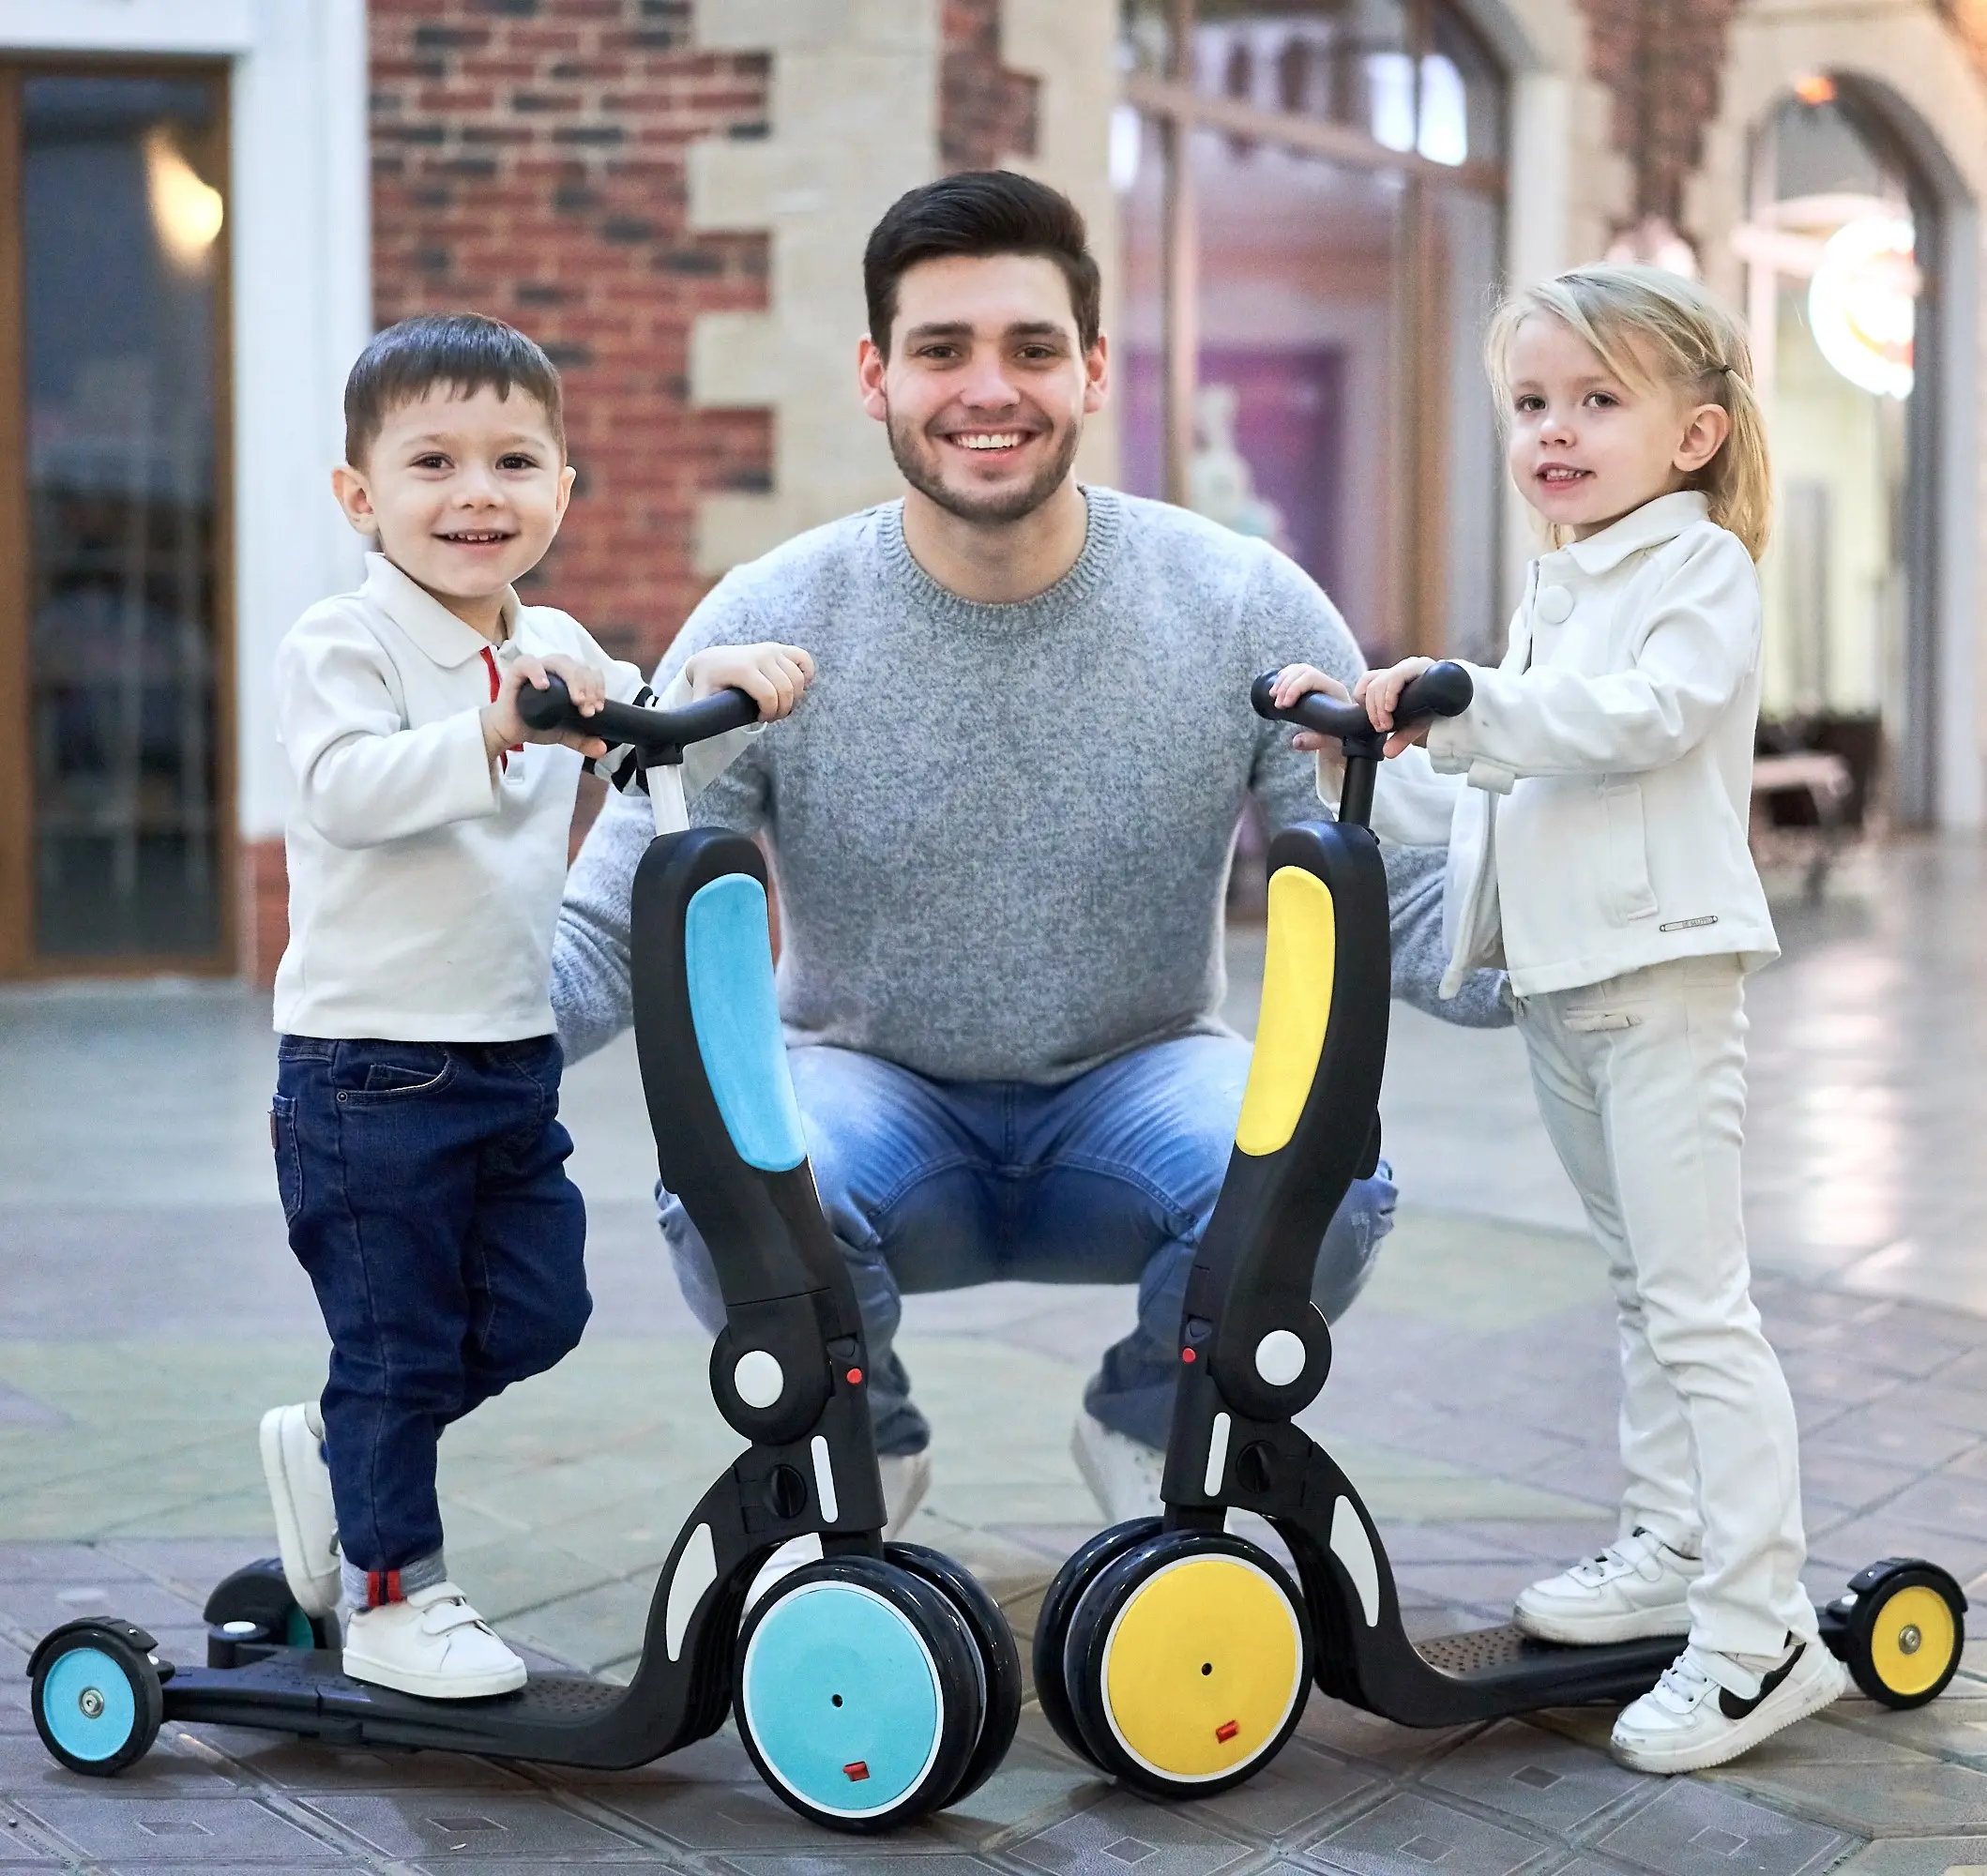 Venta al por mayor plegable 5 en 1 niño niños patada Scooters de 3 ruedas juguetes bicicleta de los niños pie Scooter de niños para niños 5 en 1